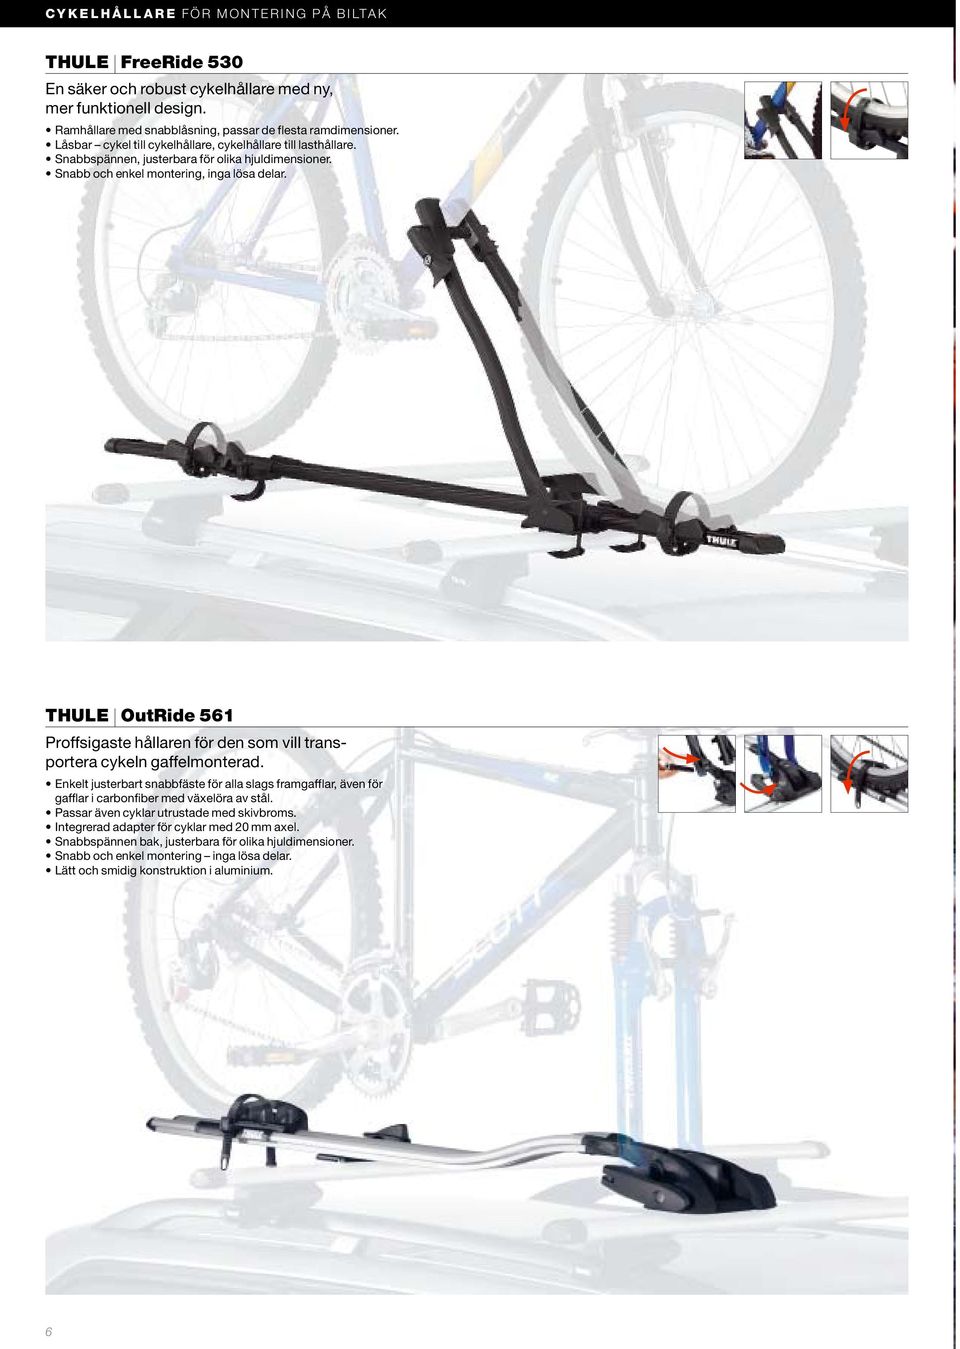 Snabb och enkel montering, inga lösa delar. THULE OutRide 561 Proffsigaste hållaren för den som vill transportera cykeln gaffelmonterad.